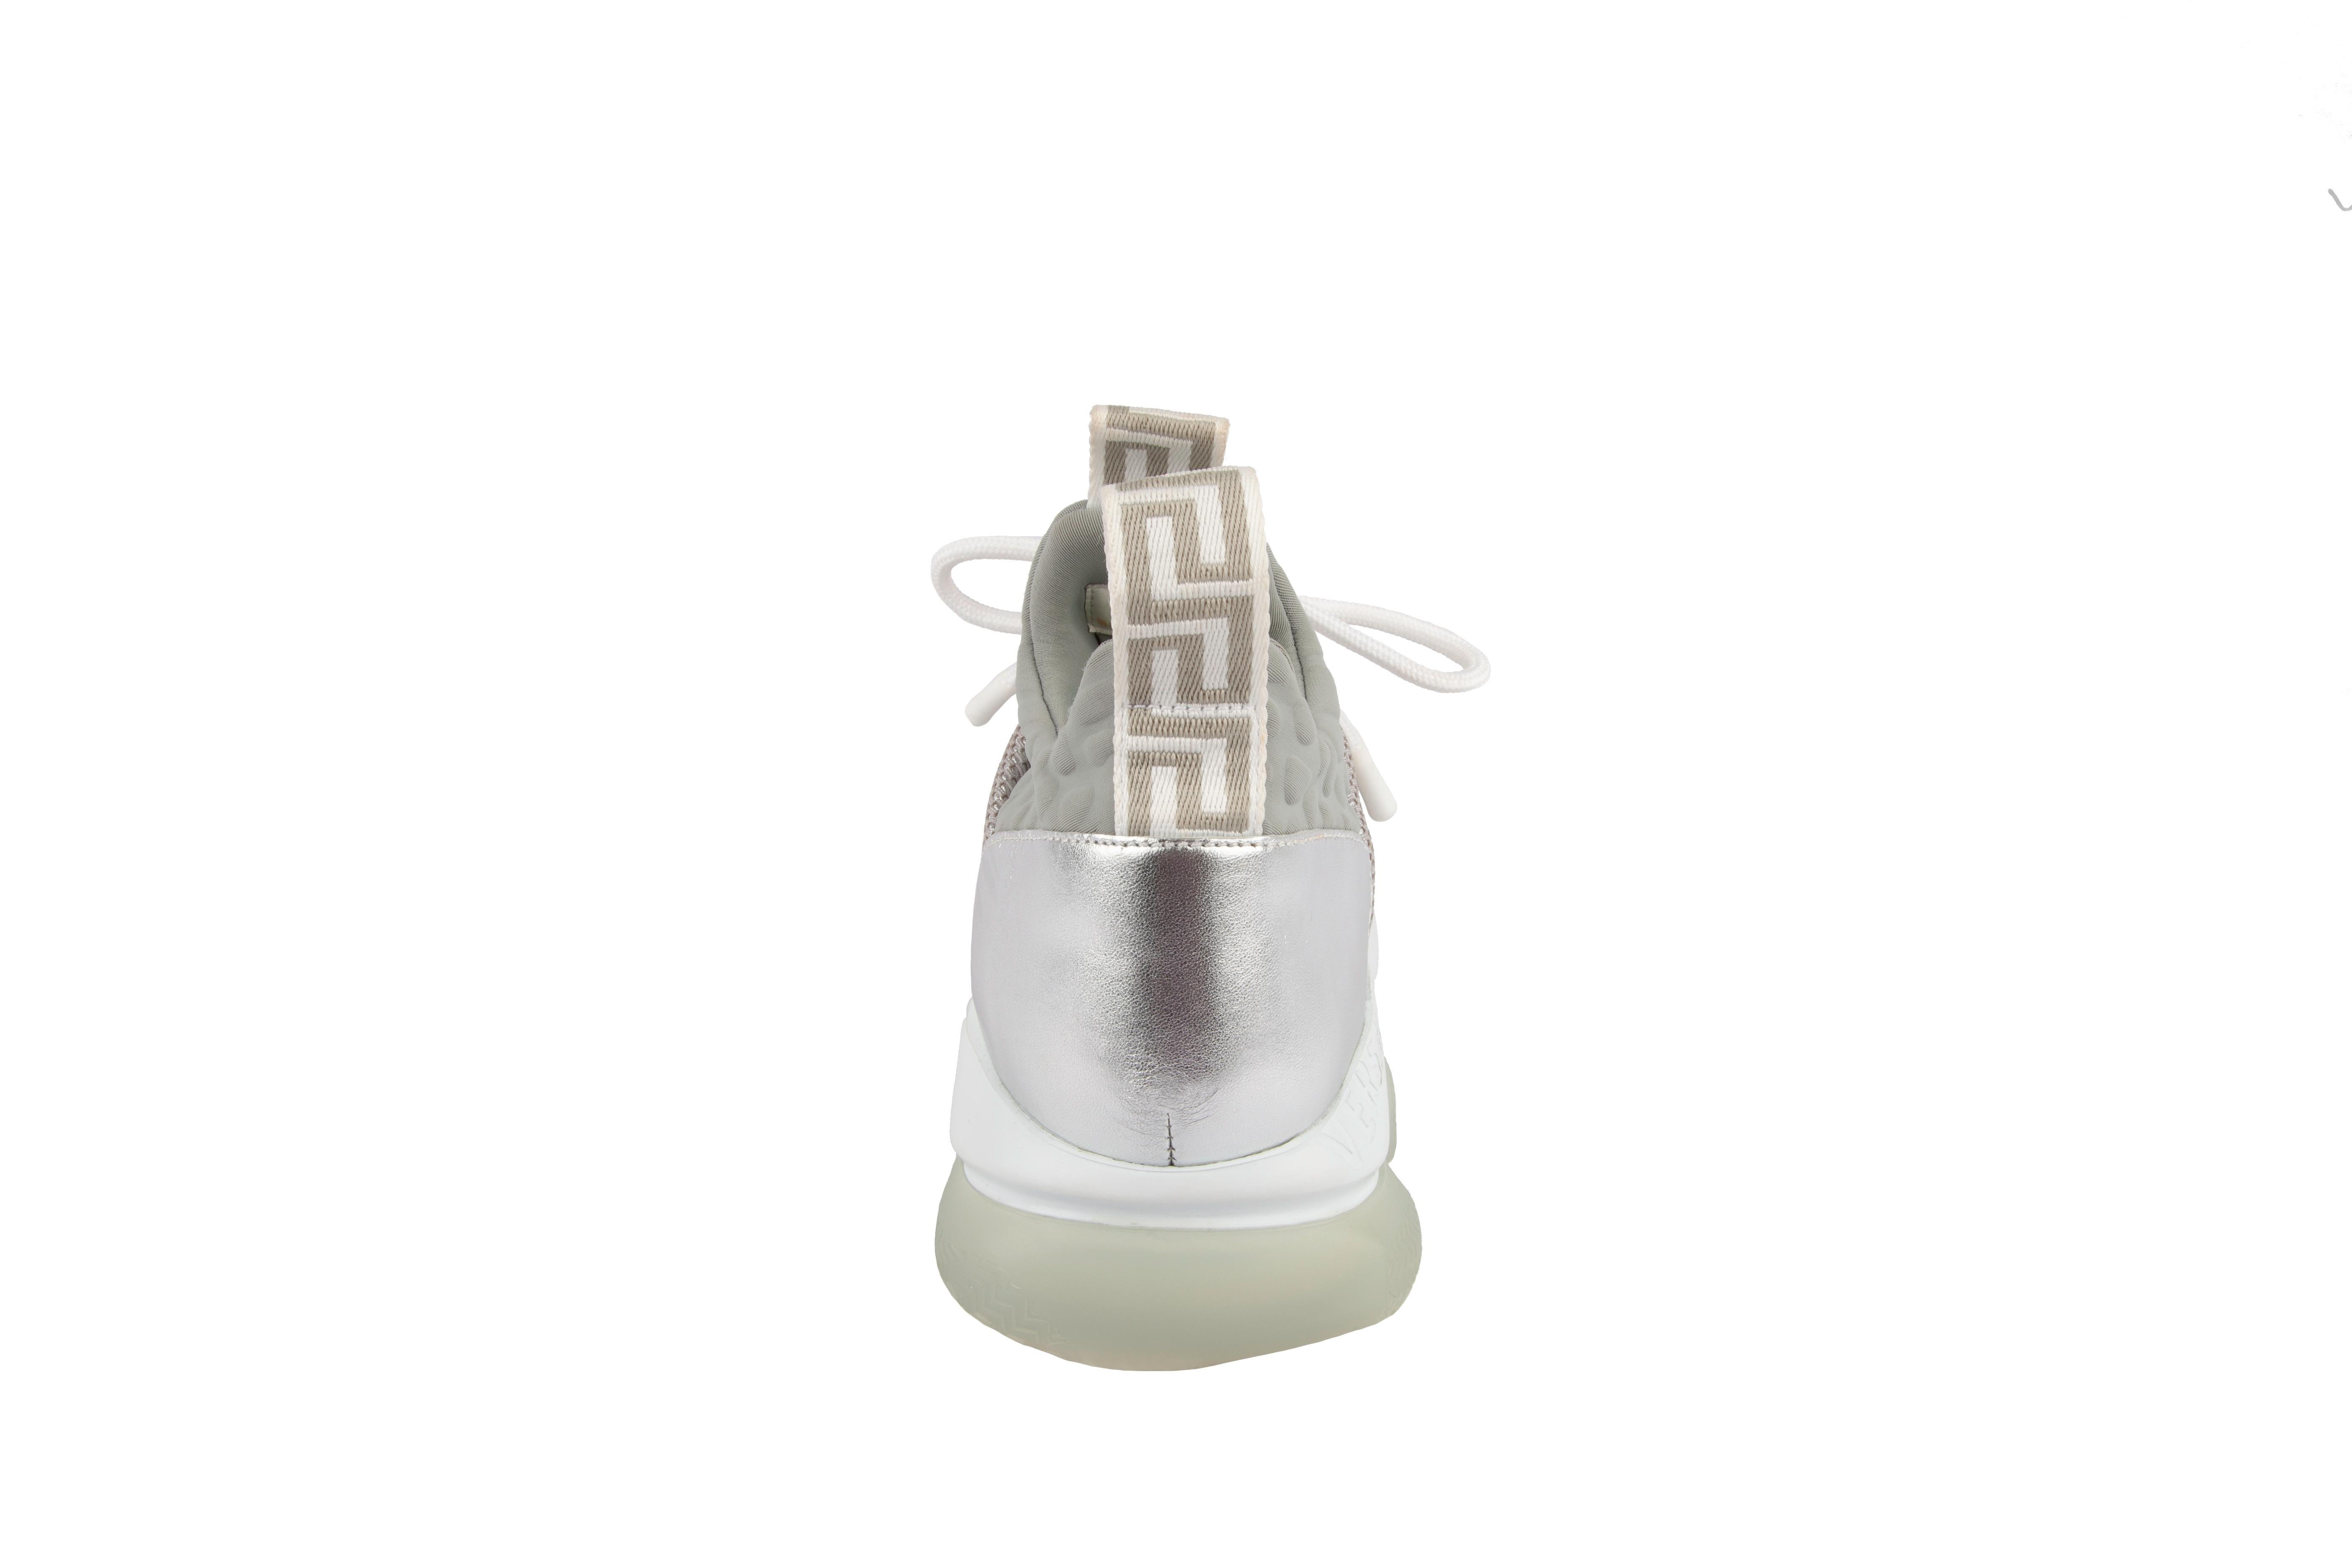 Diese silbernen Versace Cross Chainer Sneakers verfügen über Puff-Croc-Neopren-Akzente an der Zunge und am Innenfutter, eine durchscheinende Glitzer-Zehenkappe und die charakteristische Kettenglied-Laufsohle. Das Greca-Schlüsselmuster von Versace